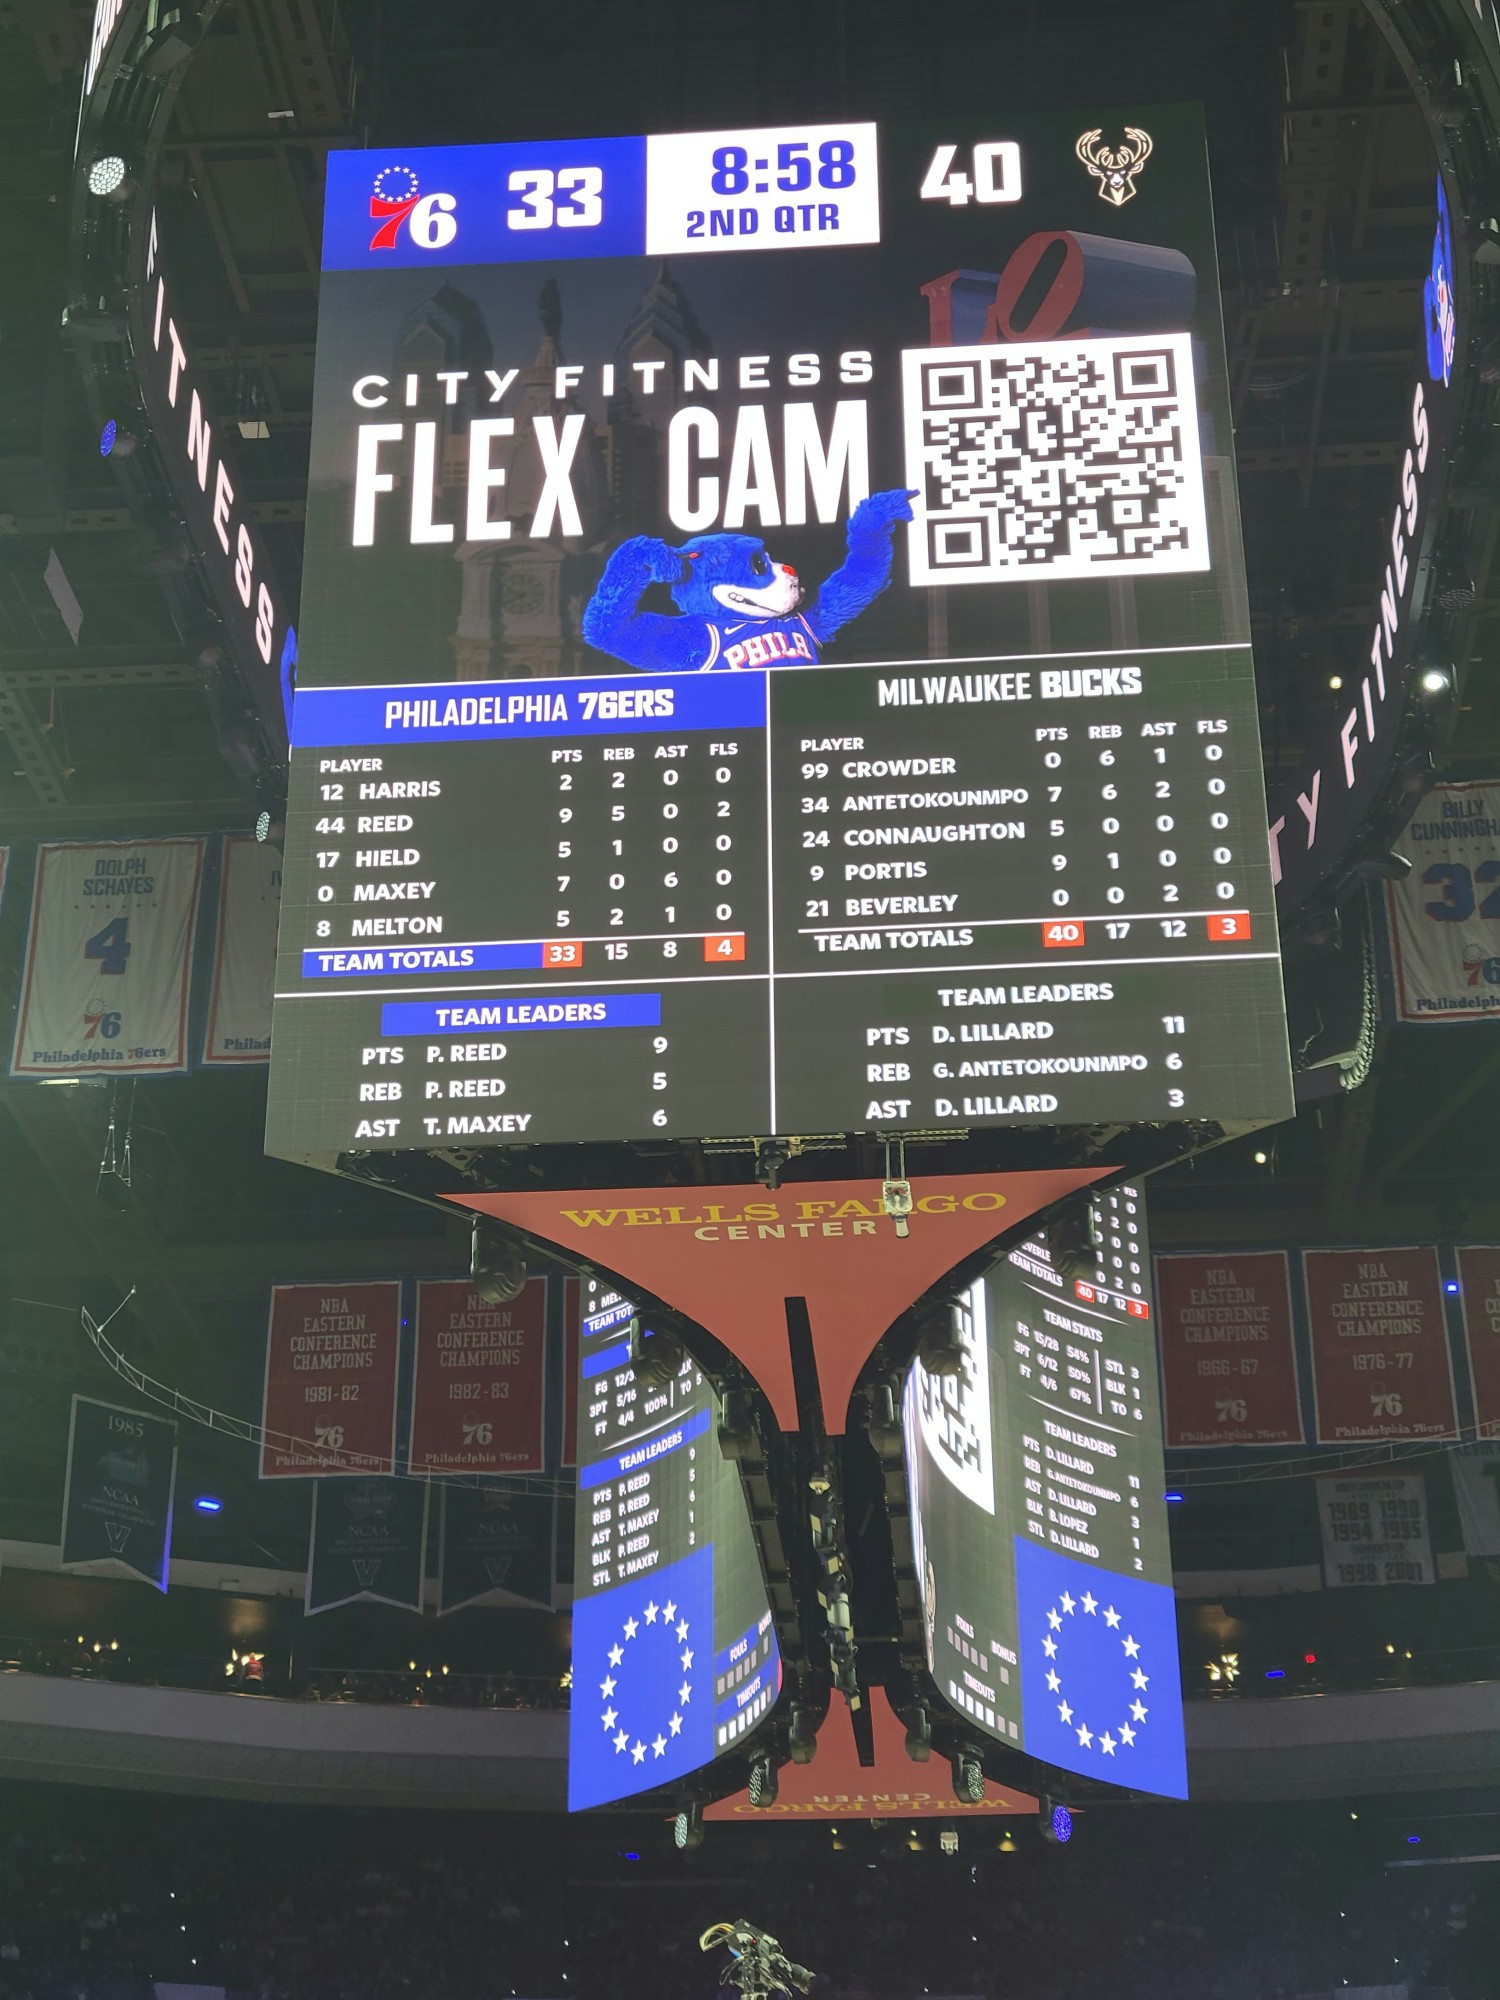 City Fitness Flex Cam- Official Fitness sponsor of the Philadelphia 76ers